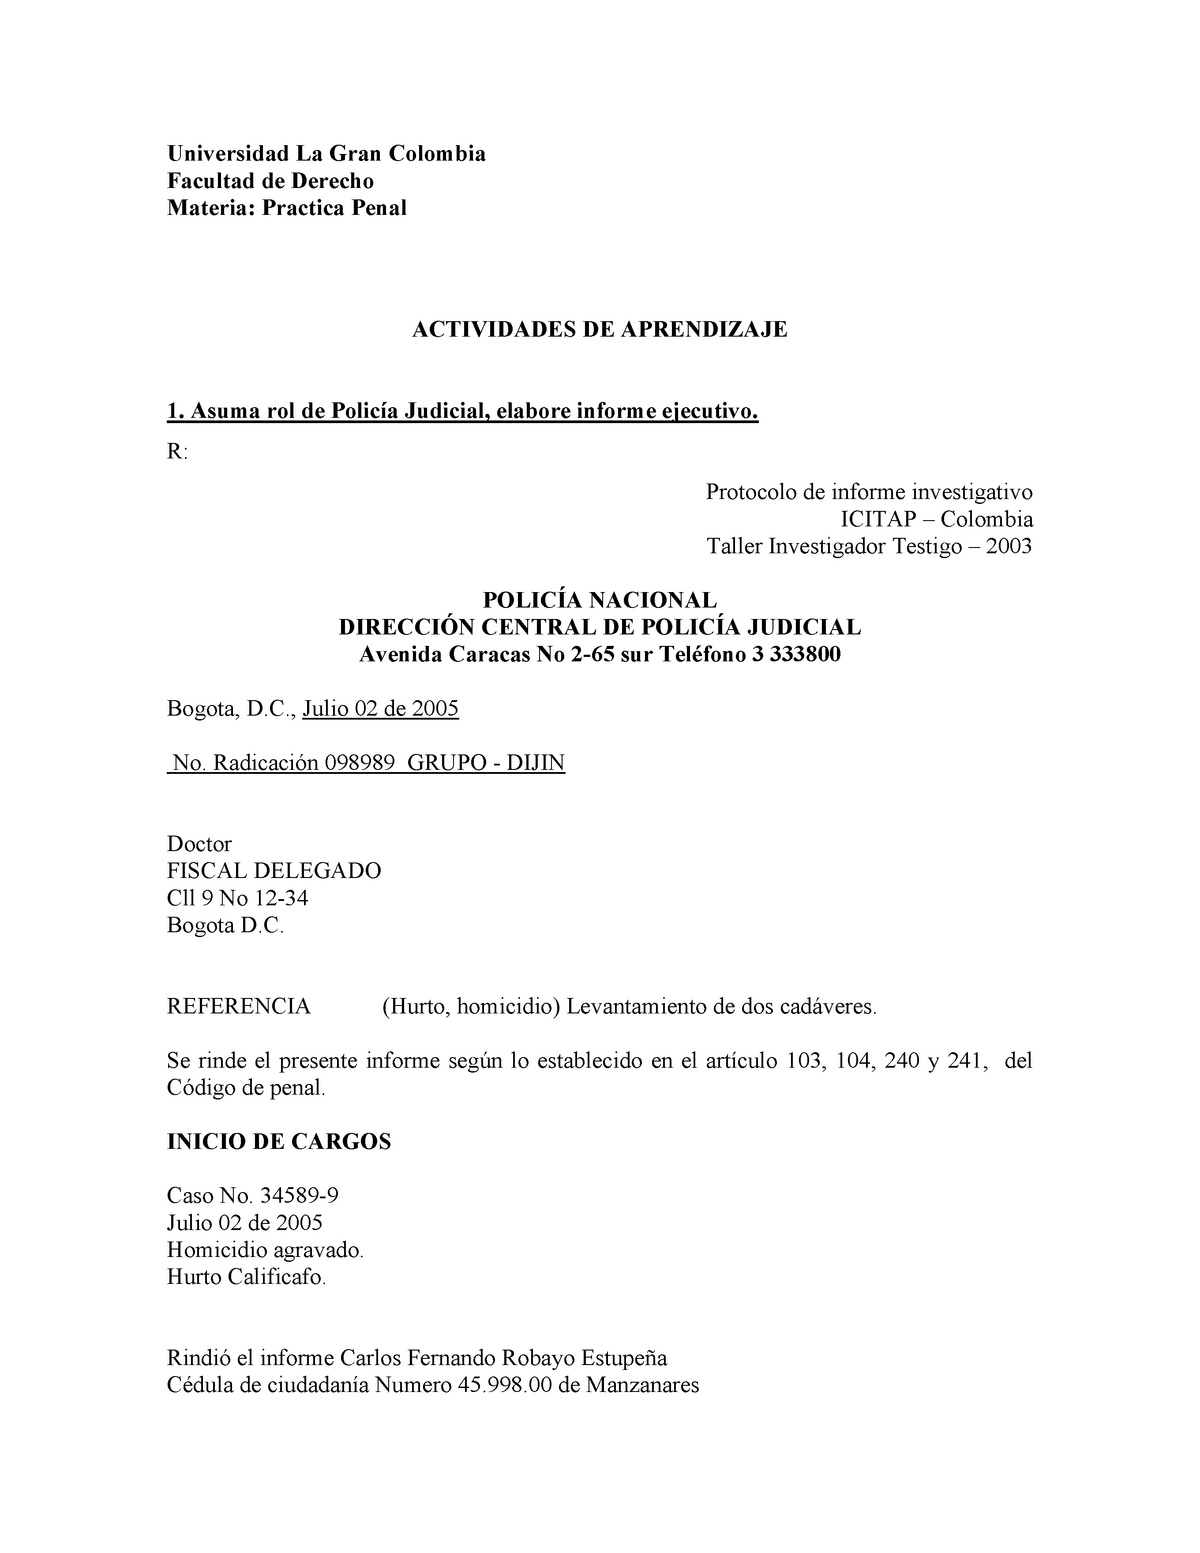 MODELO DE INFORME EJECUTIVO POLICIA JUDICIAL - Universidad La Gran Colombia  Facultad de Derecho - Studocu